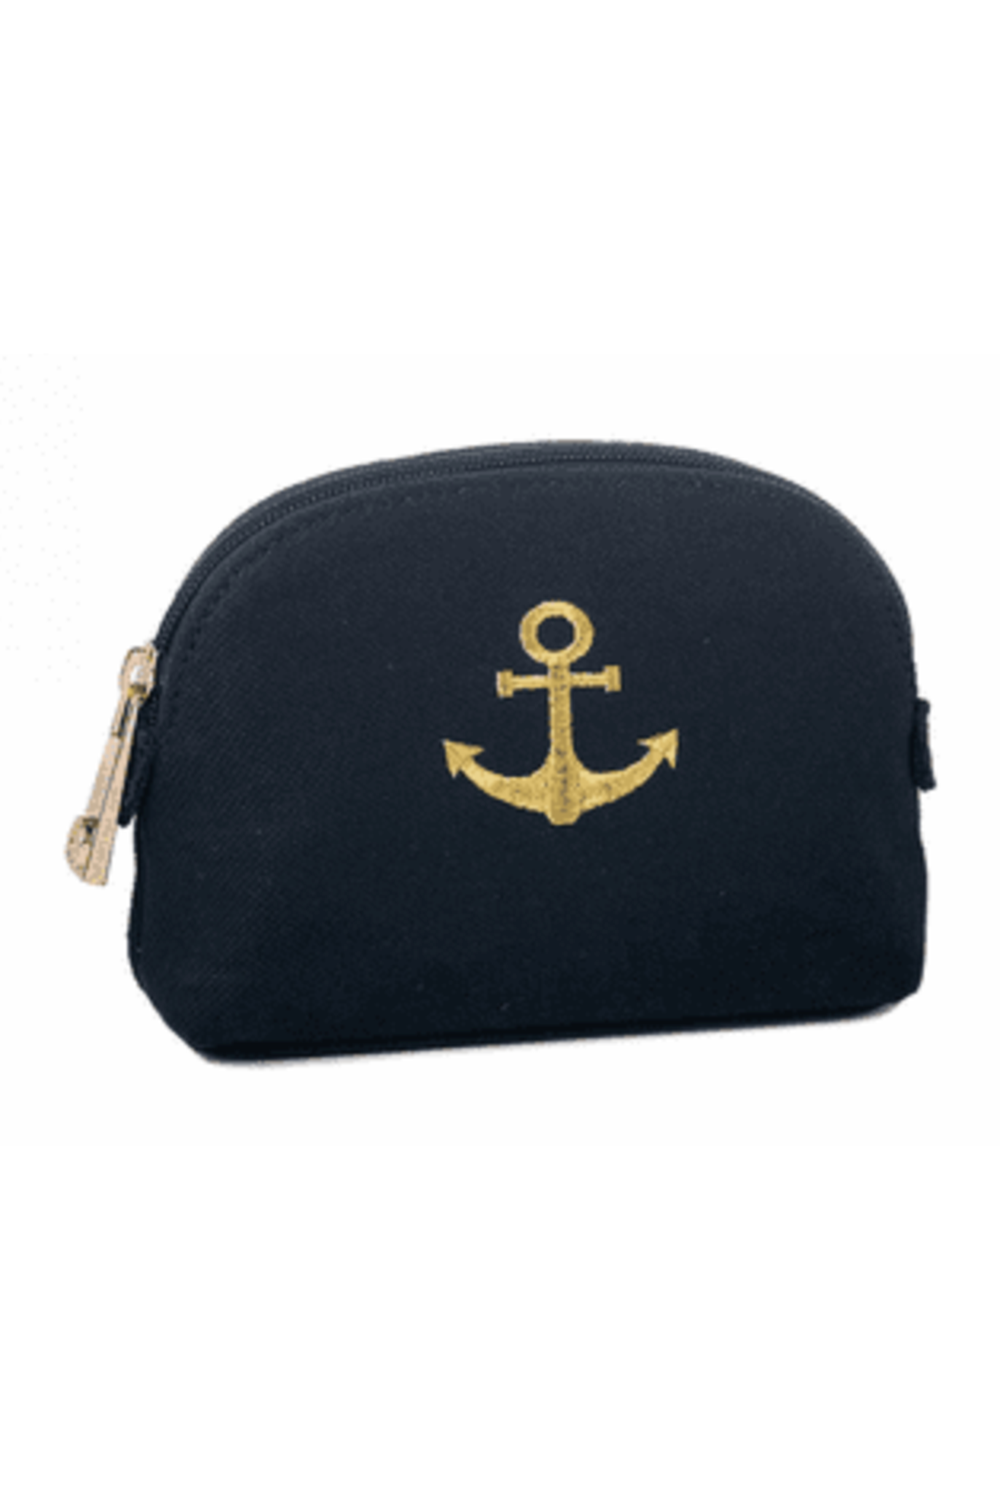 Spartina Cosmetic Case - Navy Anchor